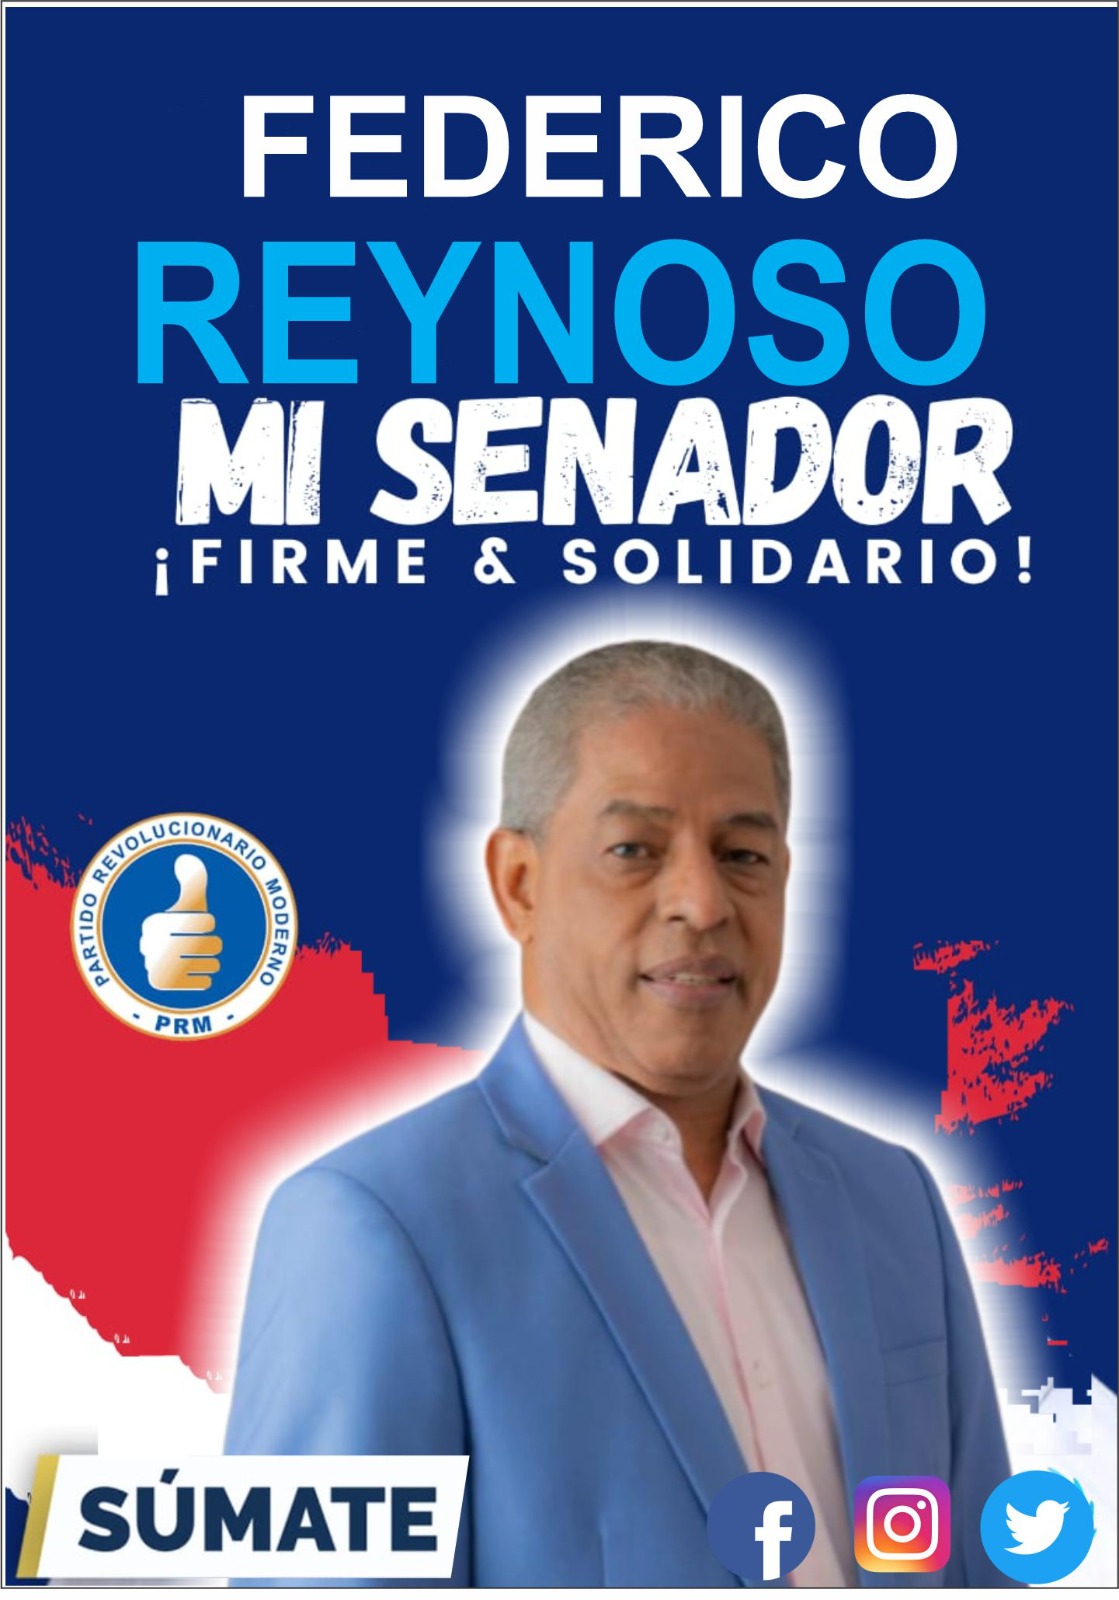 Federico Reynoso Senador